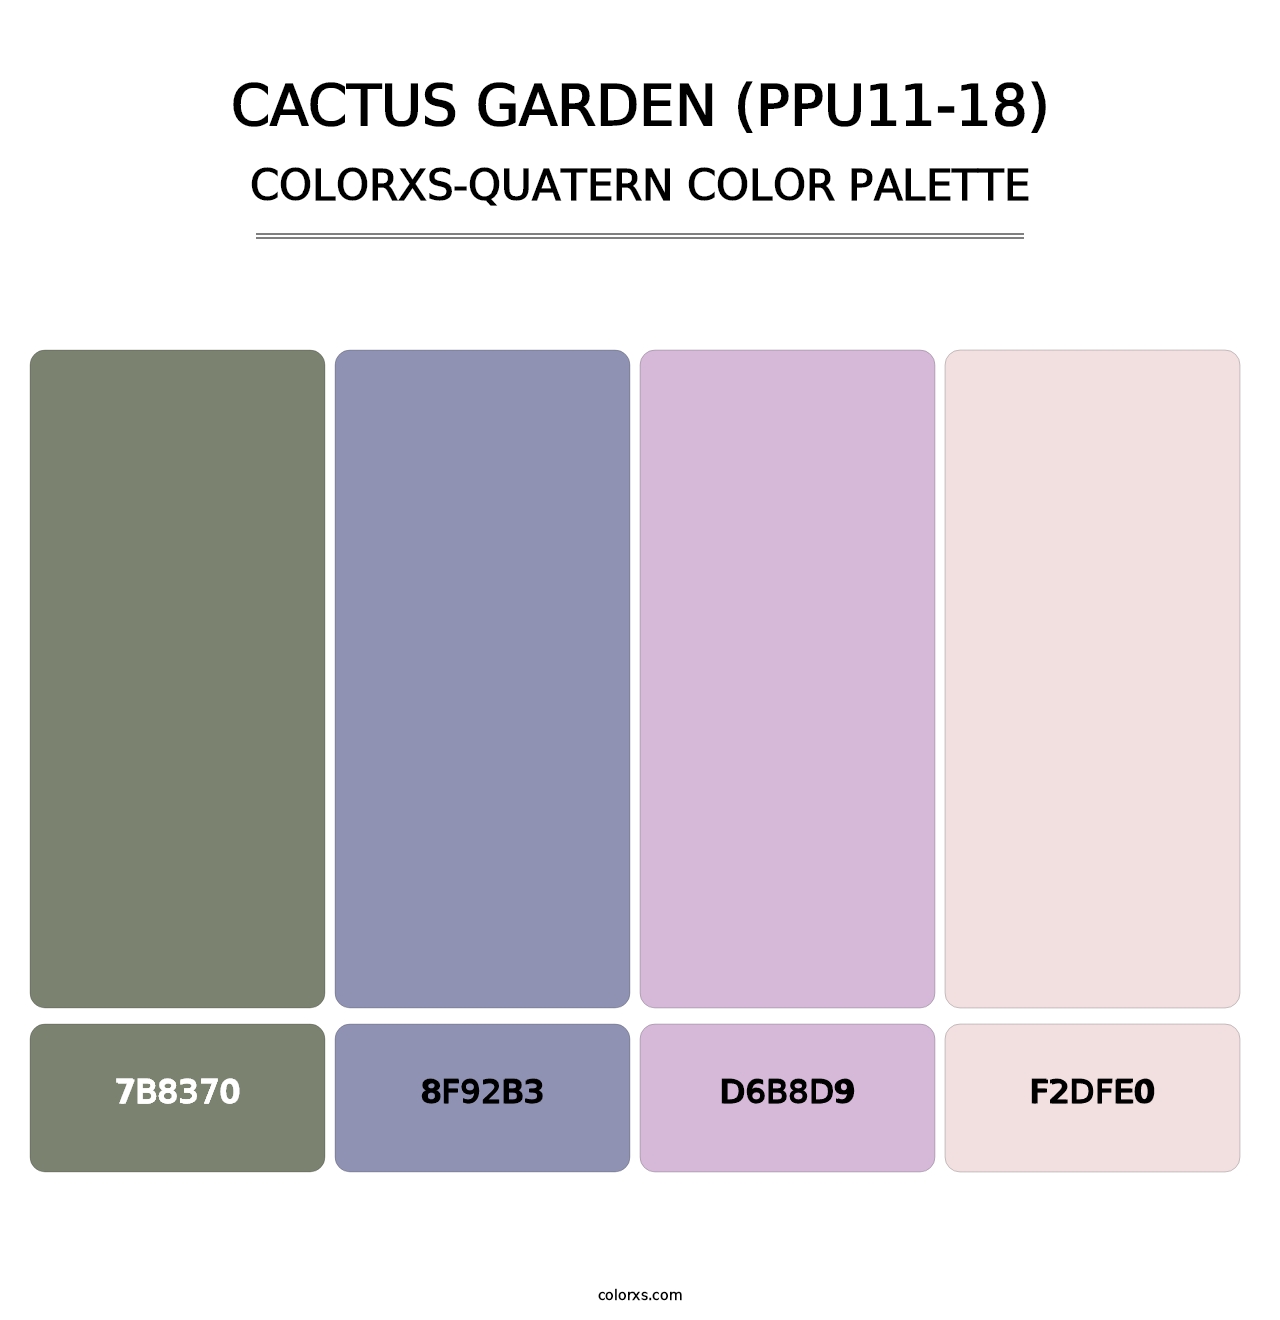 Cactus Garden (PPU11-18) - Colorxs Quatern Palette